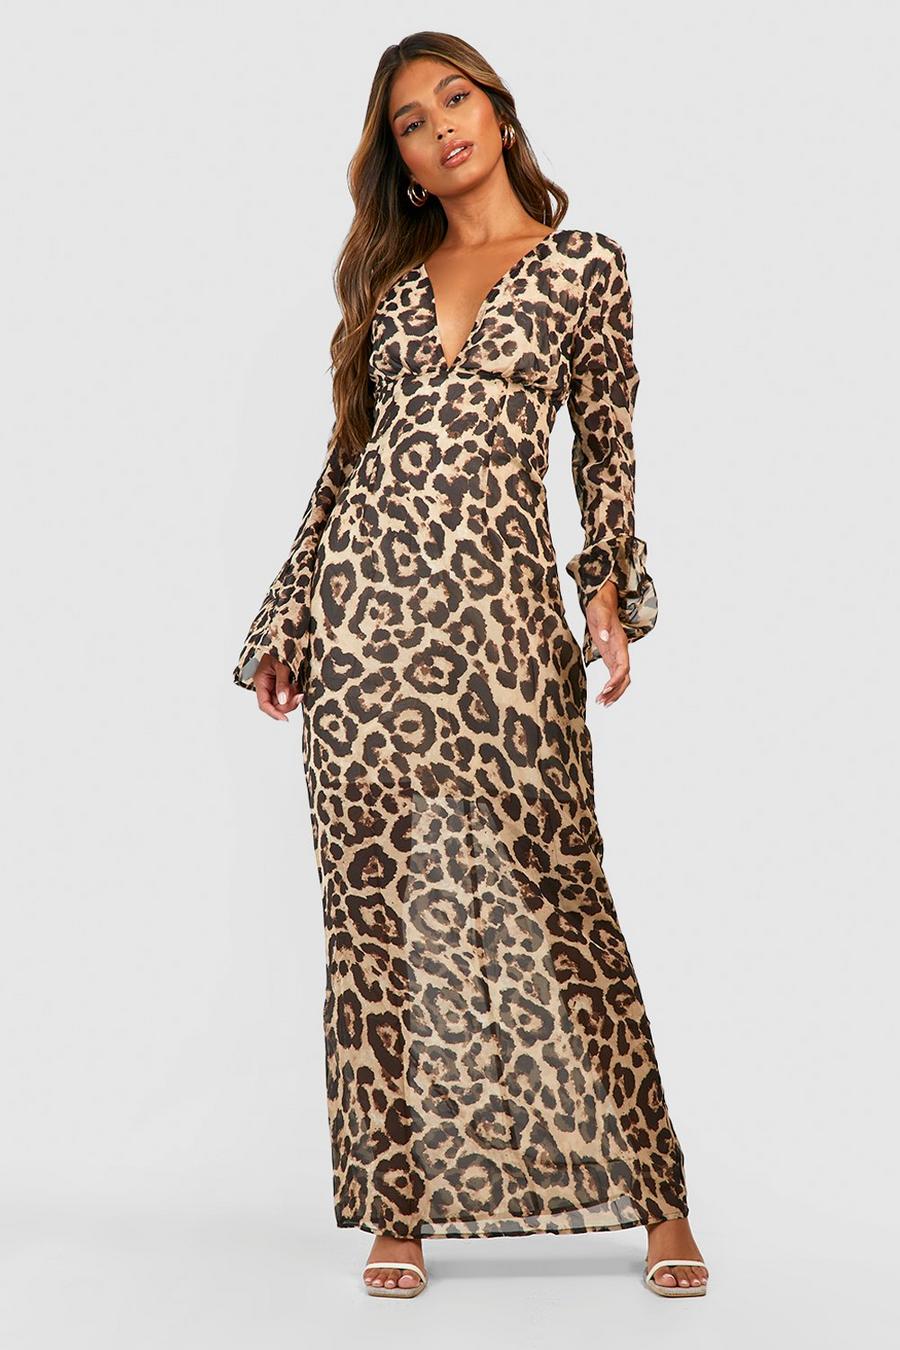 Leopard Print Chiffon Maxi Dress  image number 1